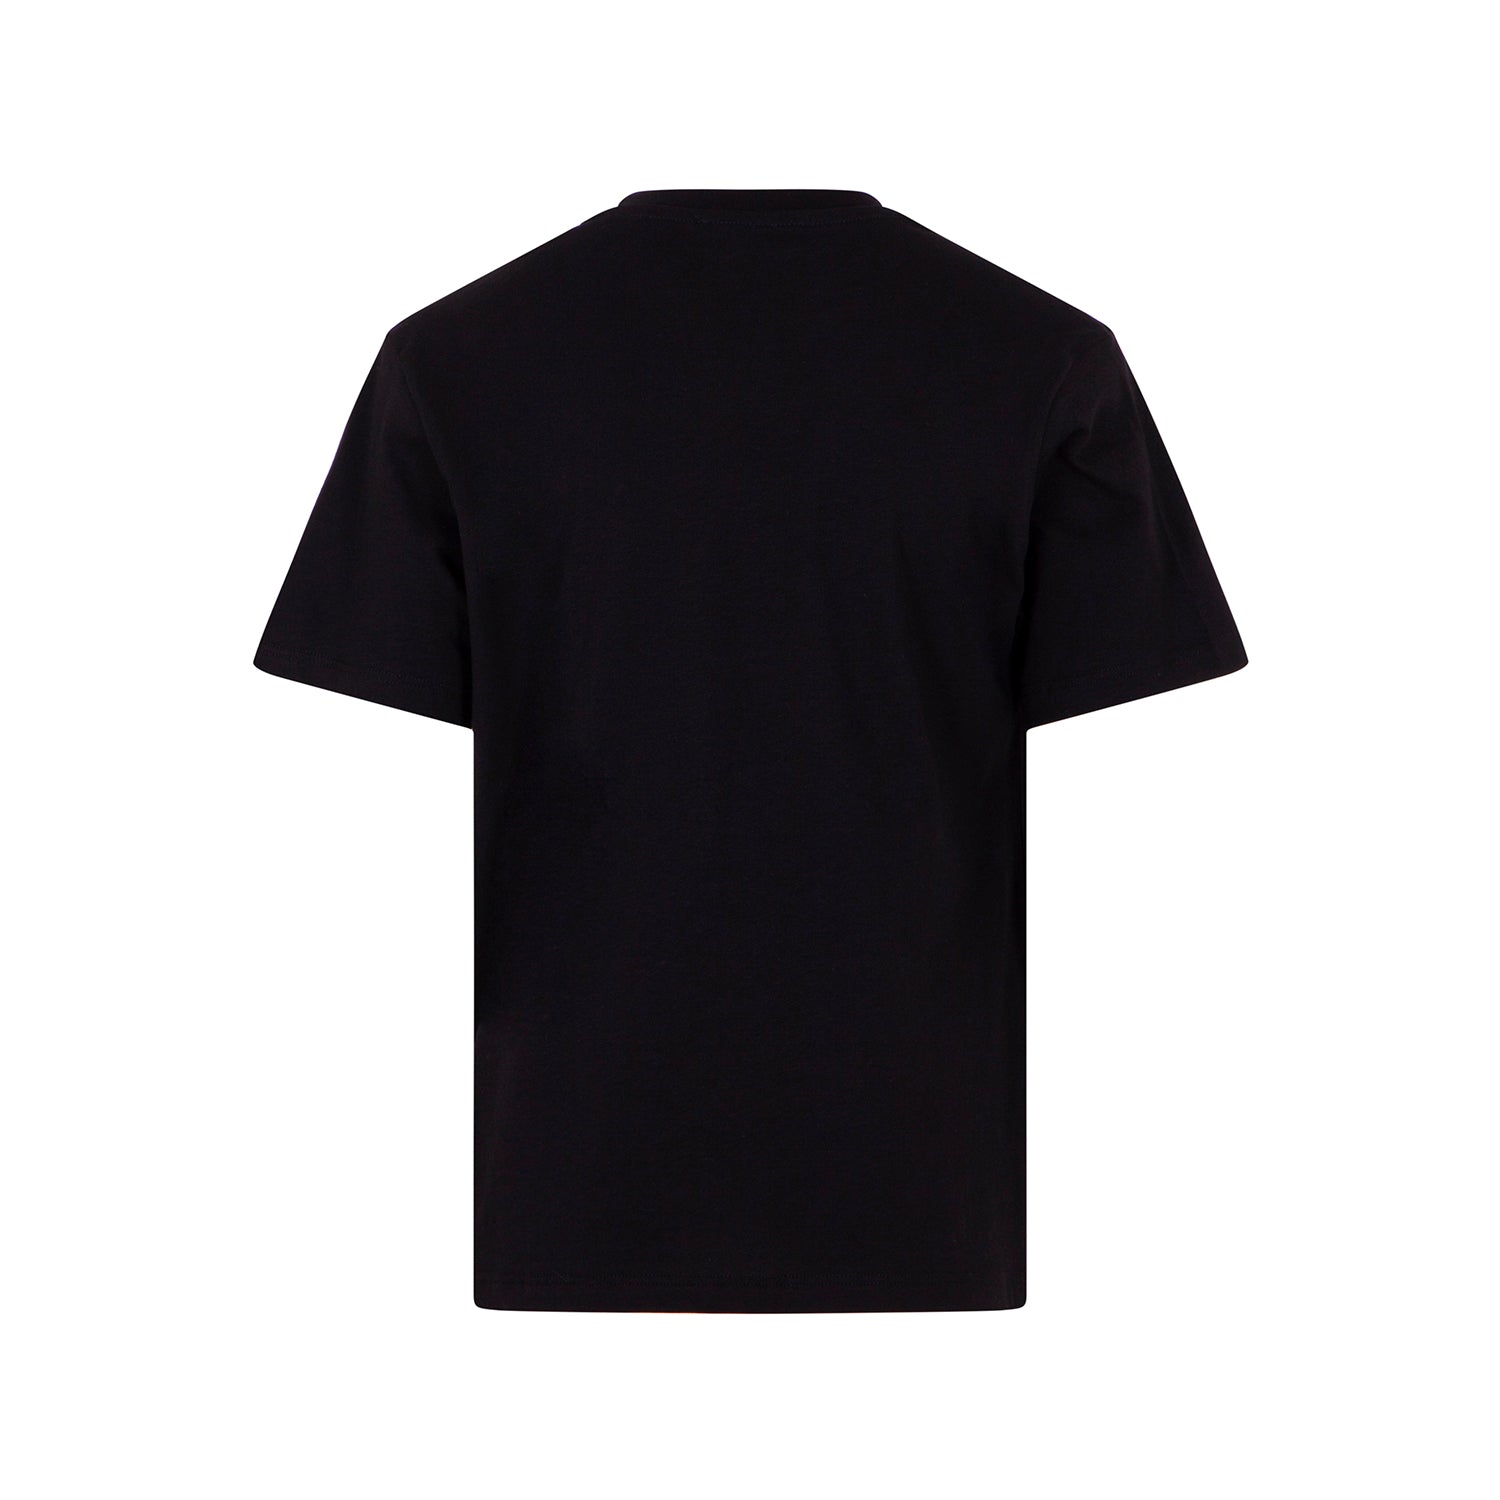 Boys & Girls Black Printed Cotton T-Shirt